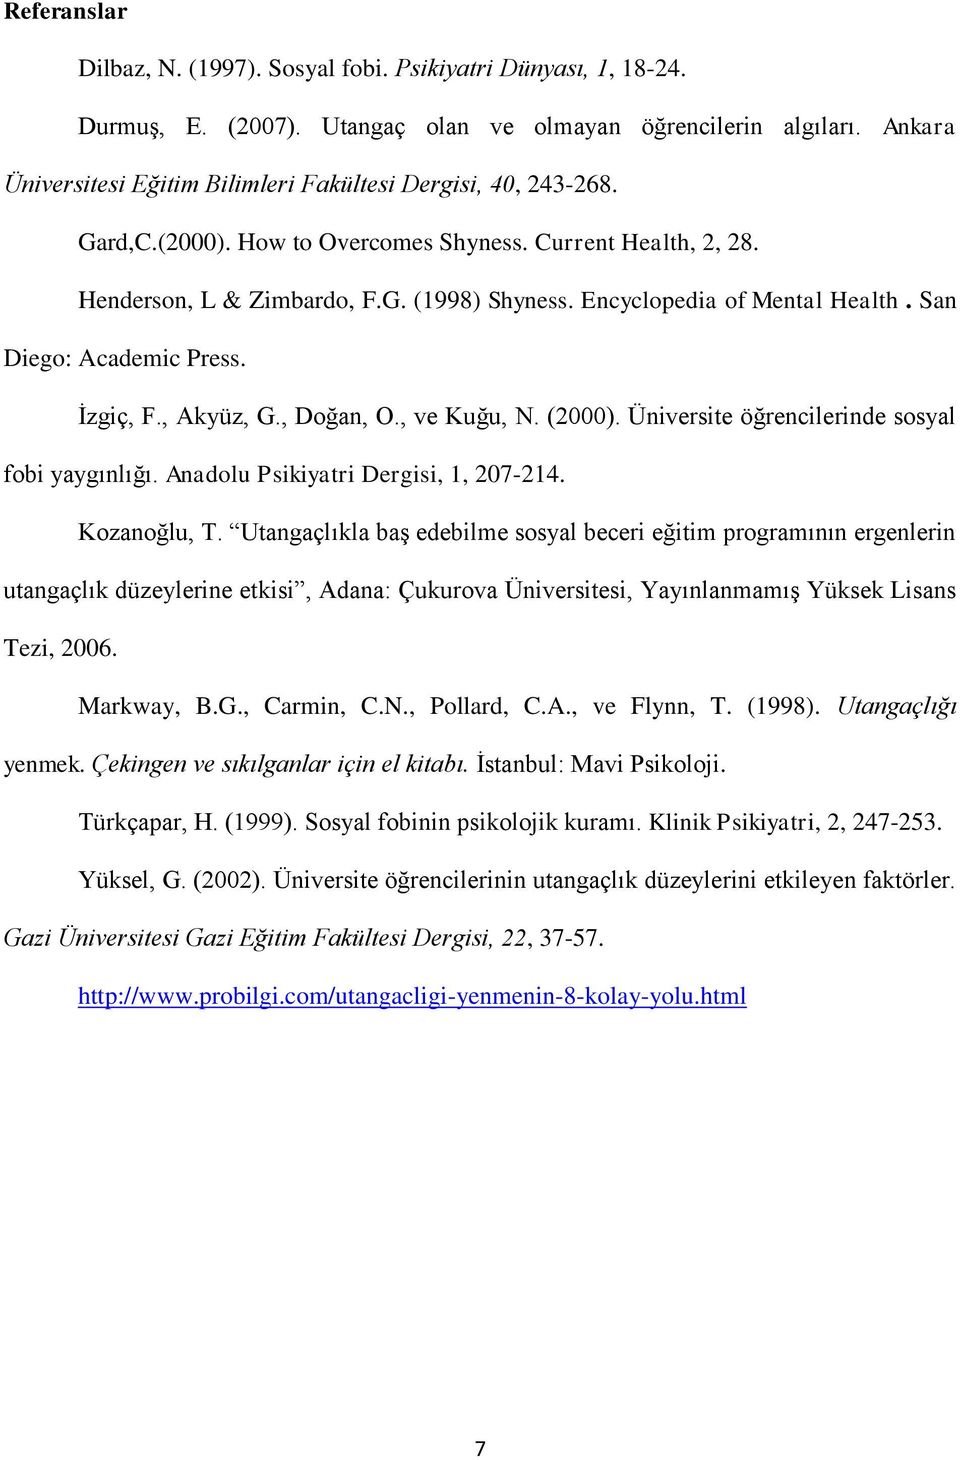 Encyclopedia of Mental Health. San Diego: Academic Press. İzgiç, F., Akyüz, G., Doğan, O., ve Kuğu, N. (2000). Üniversite öğrencilerinde sosyal fobi yaygınlığı. Anadolu Psikiyatri Dergisi, 1, 207-214.